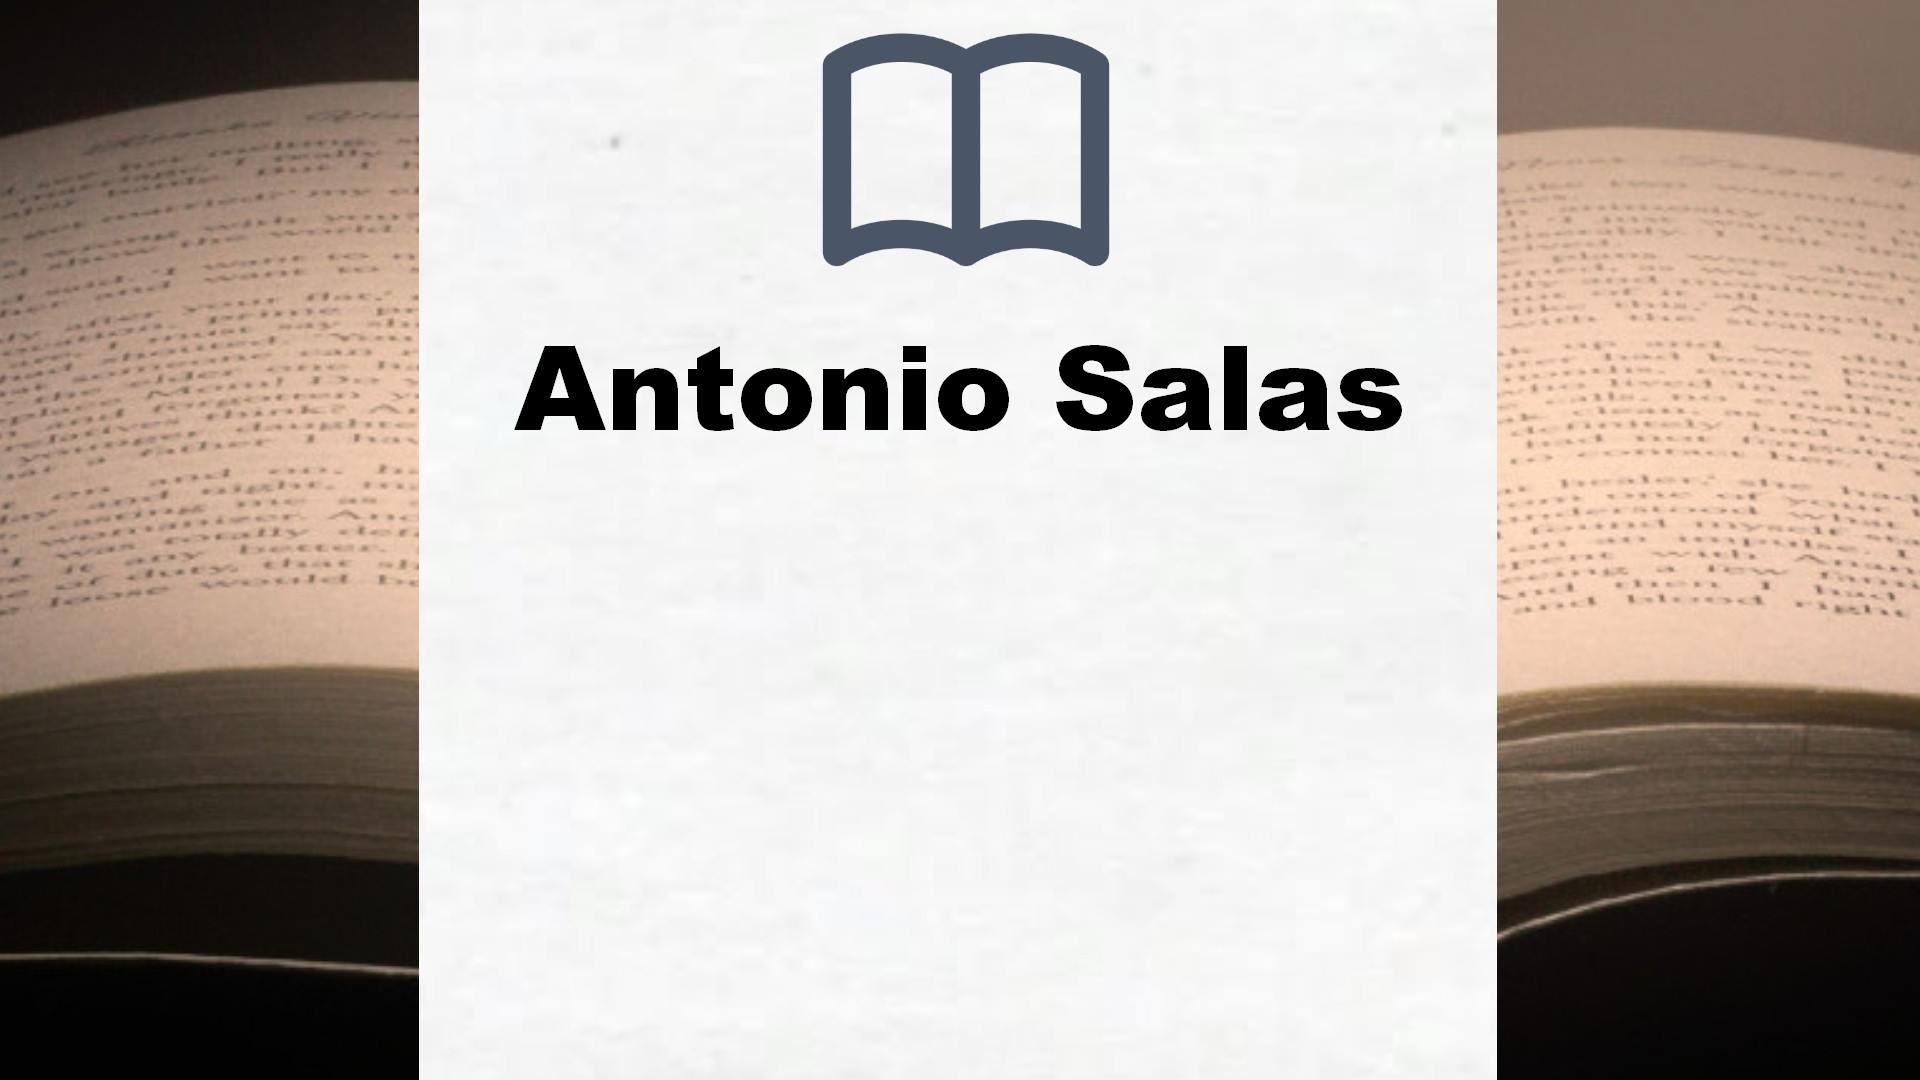 Libros Antonio Salas